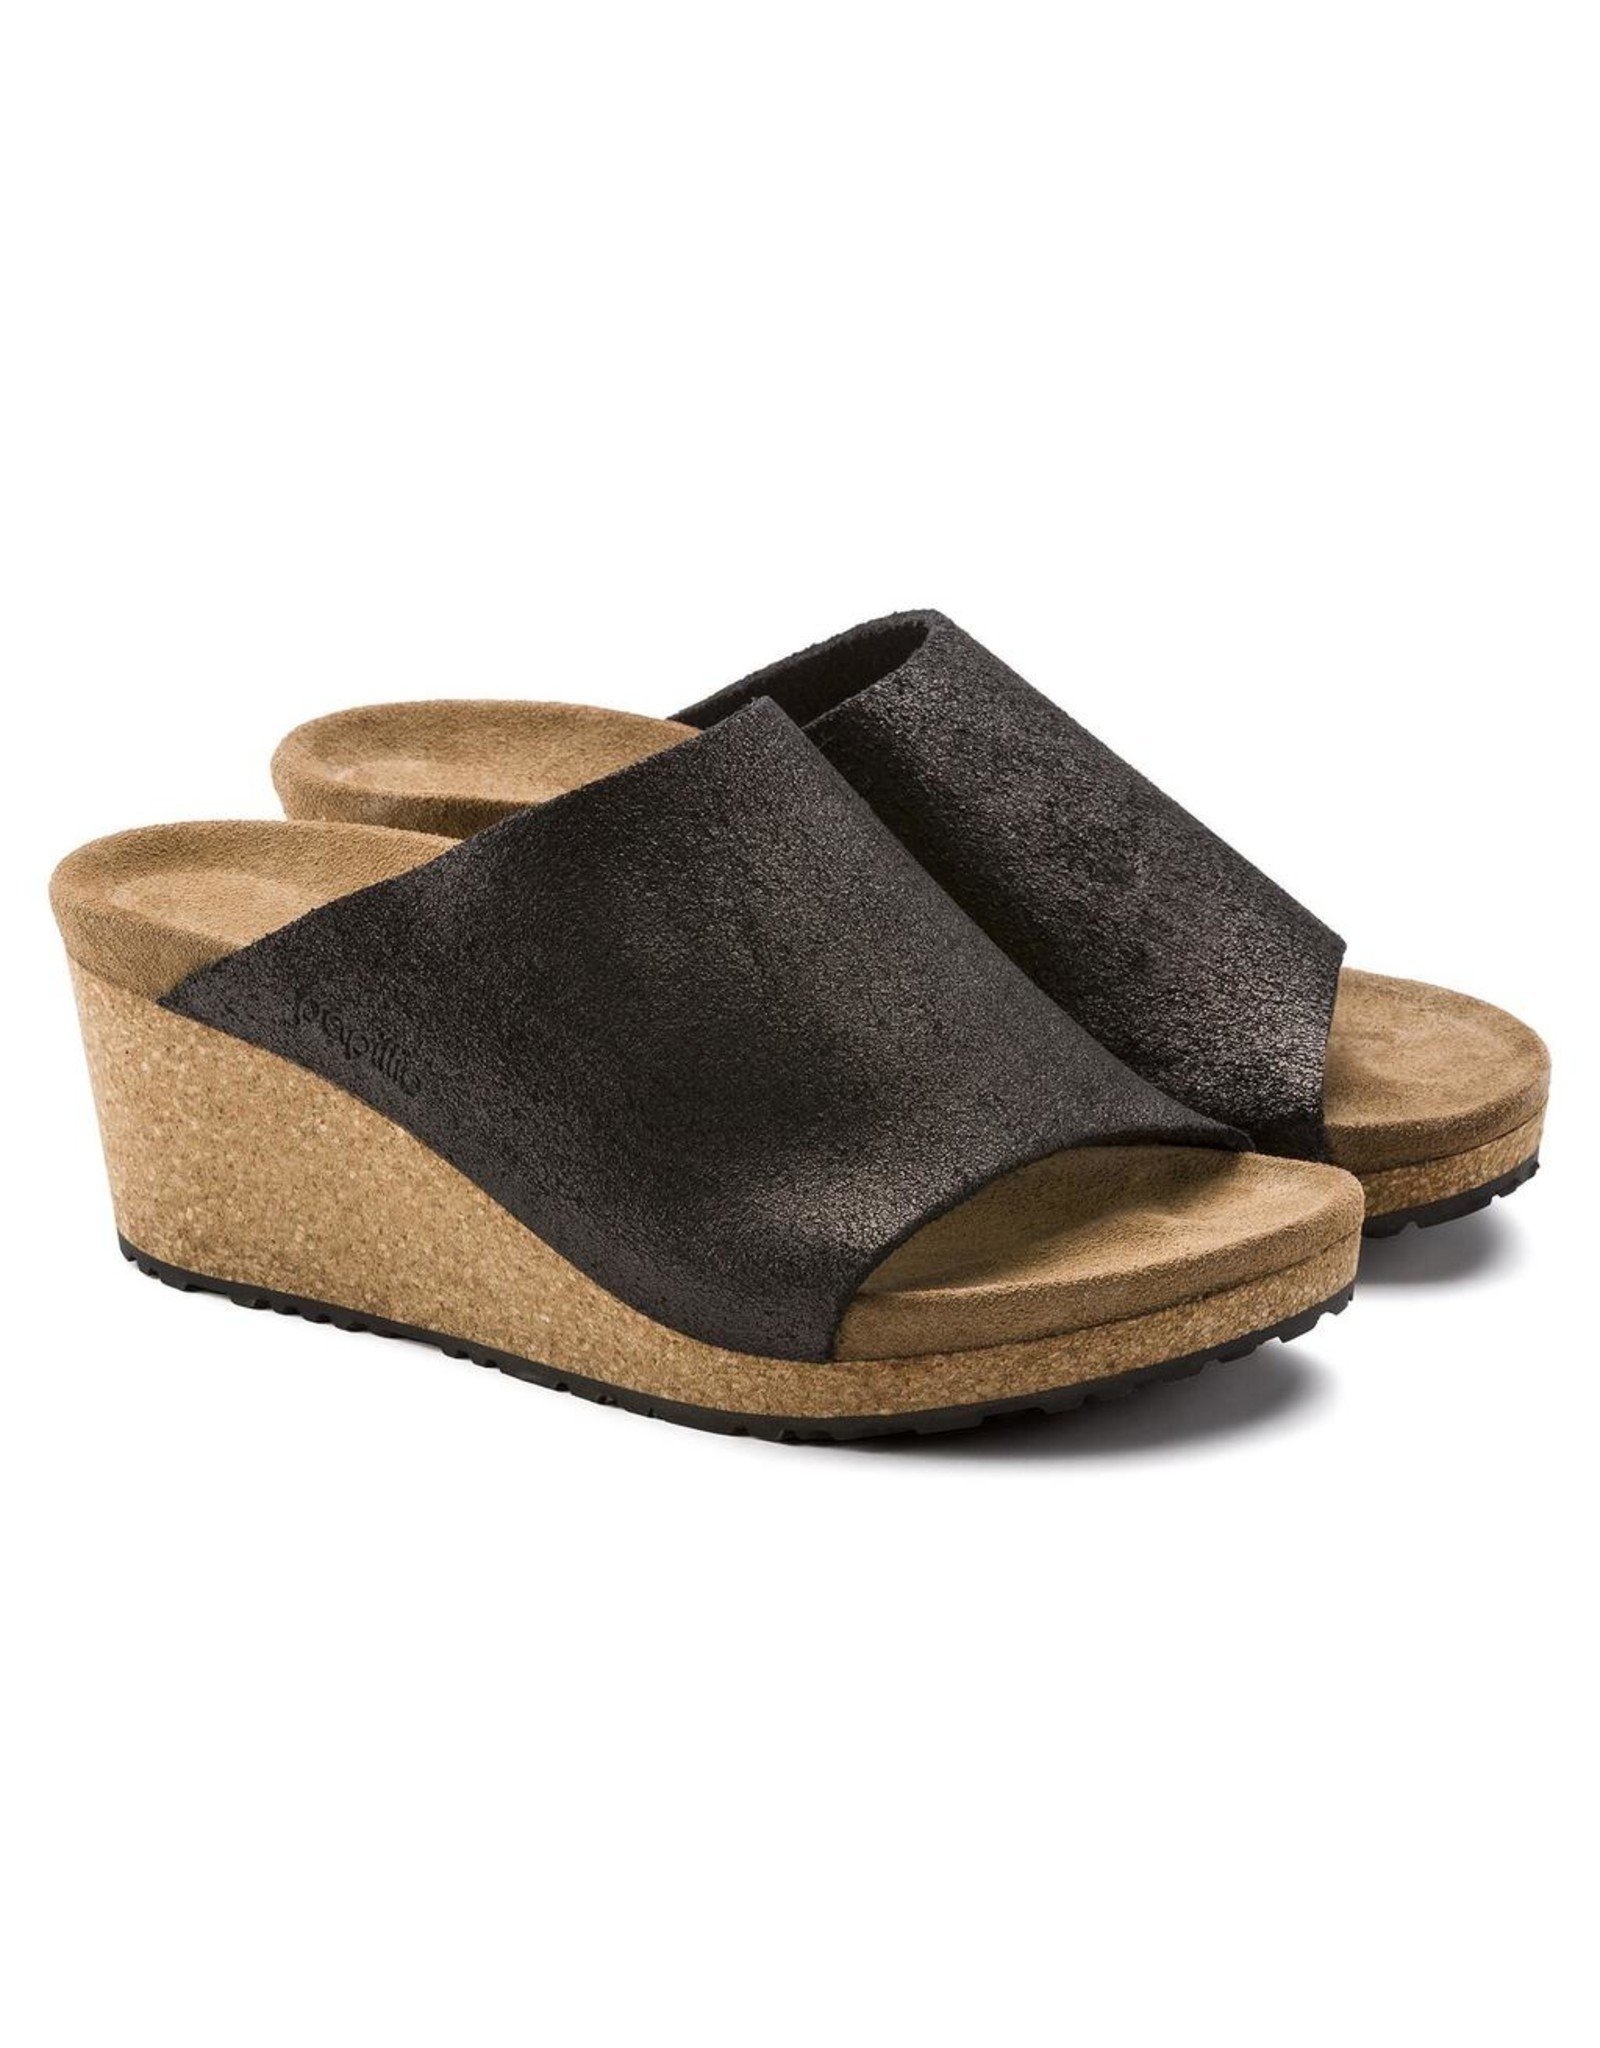 Birkenstock Namica Suede Leather Slid Wedge Sandal